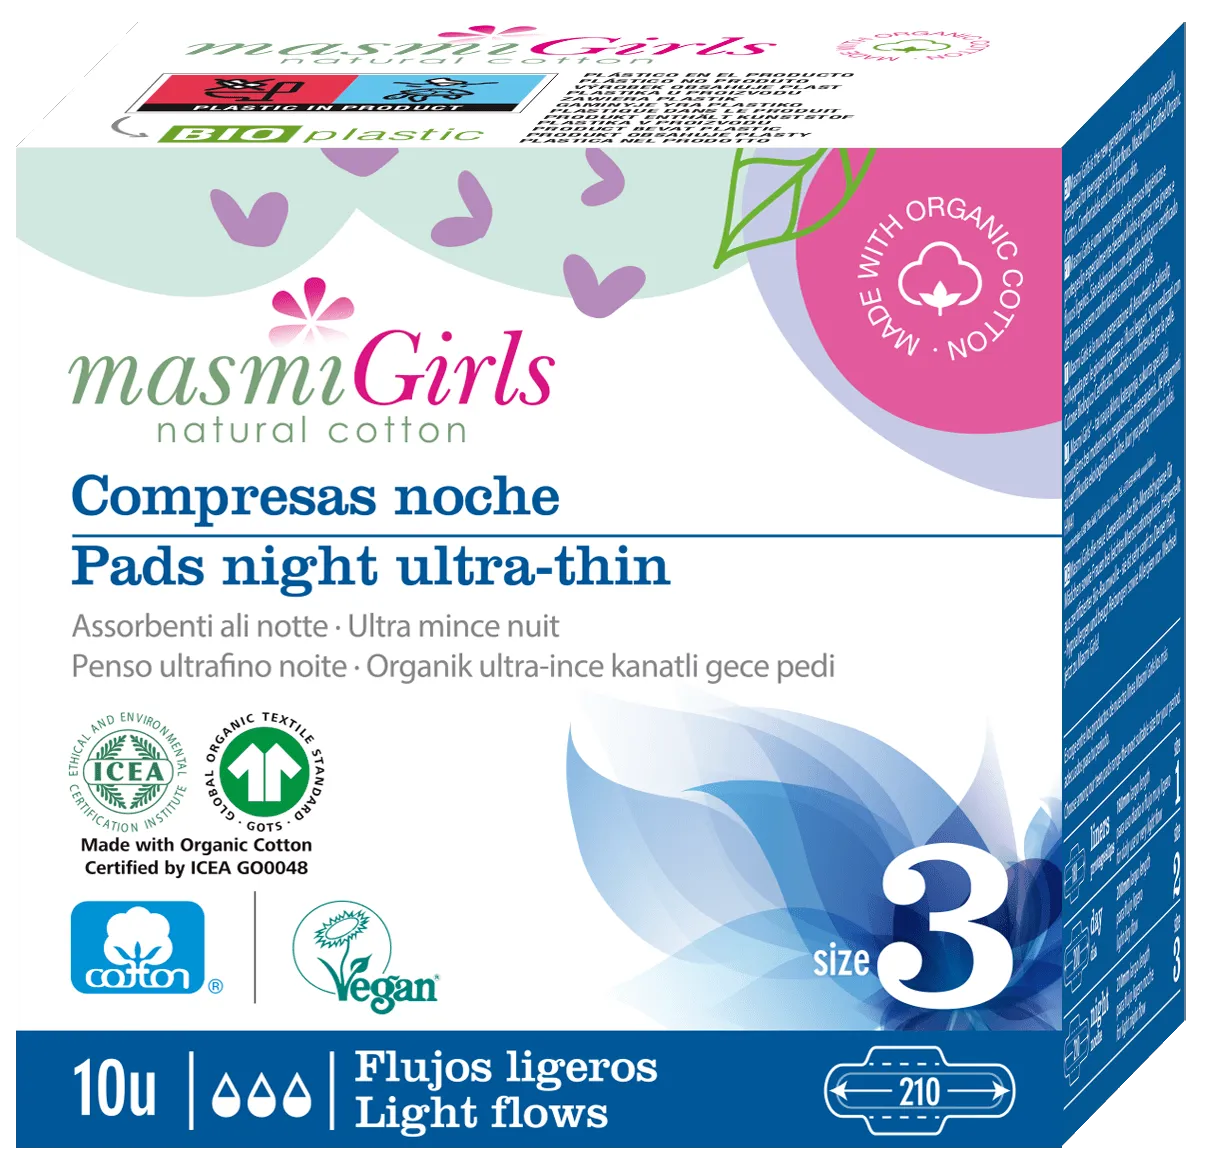 MASMI ekologiški labai ploni higieniniai paketai su sparneliais nakčiai Masmi Girls